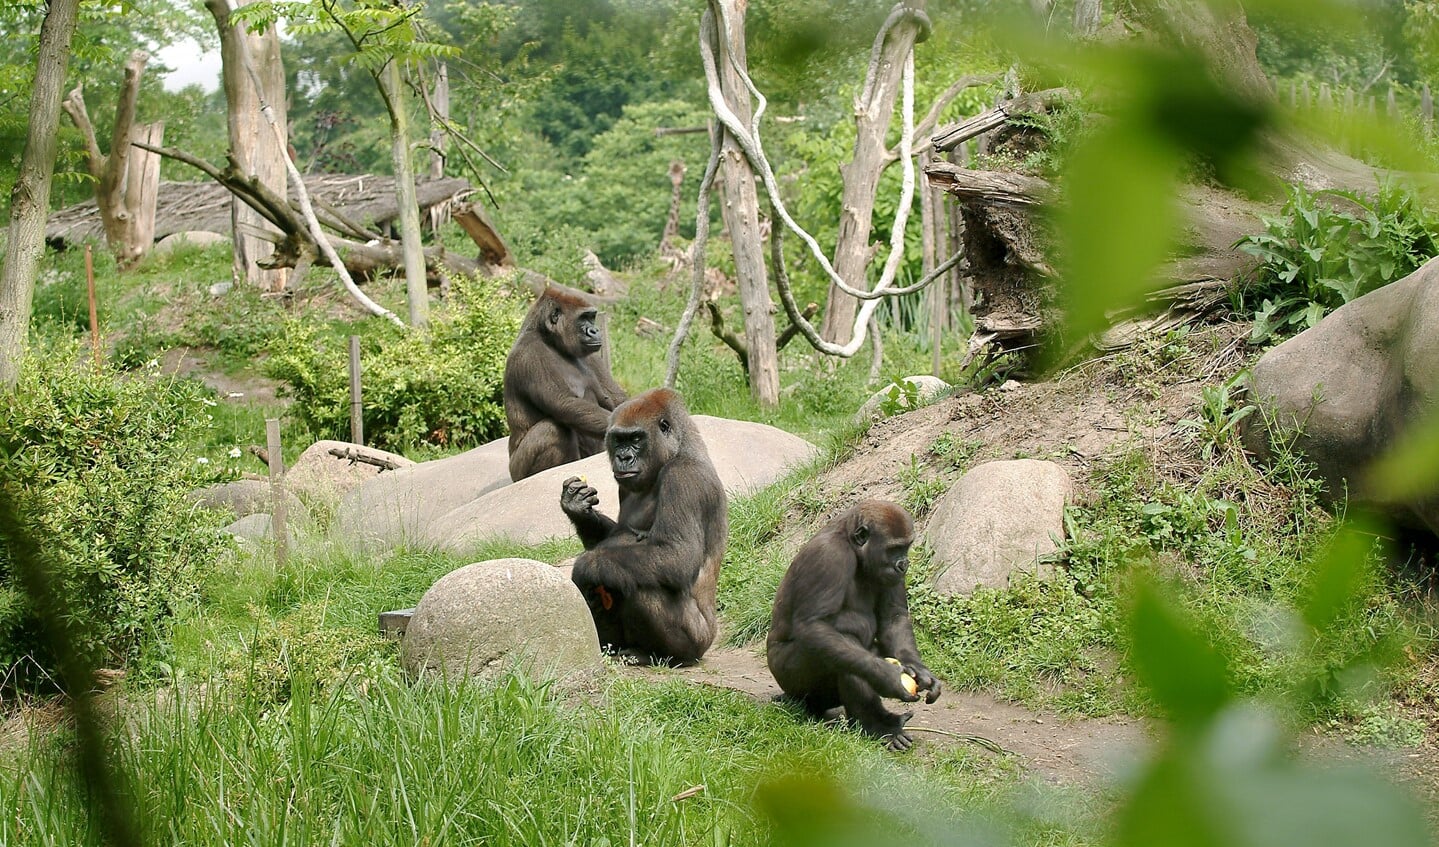 Buitenverblijf gorilla's. (Foto: Diergaarde Blijdorp)